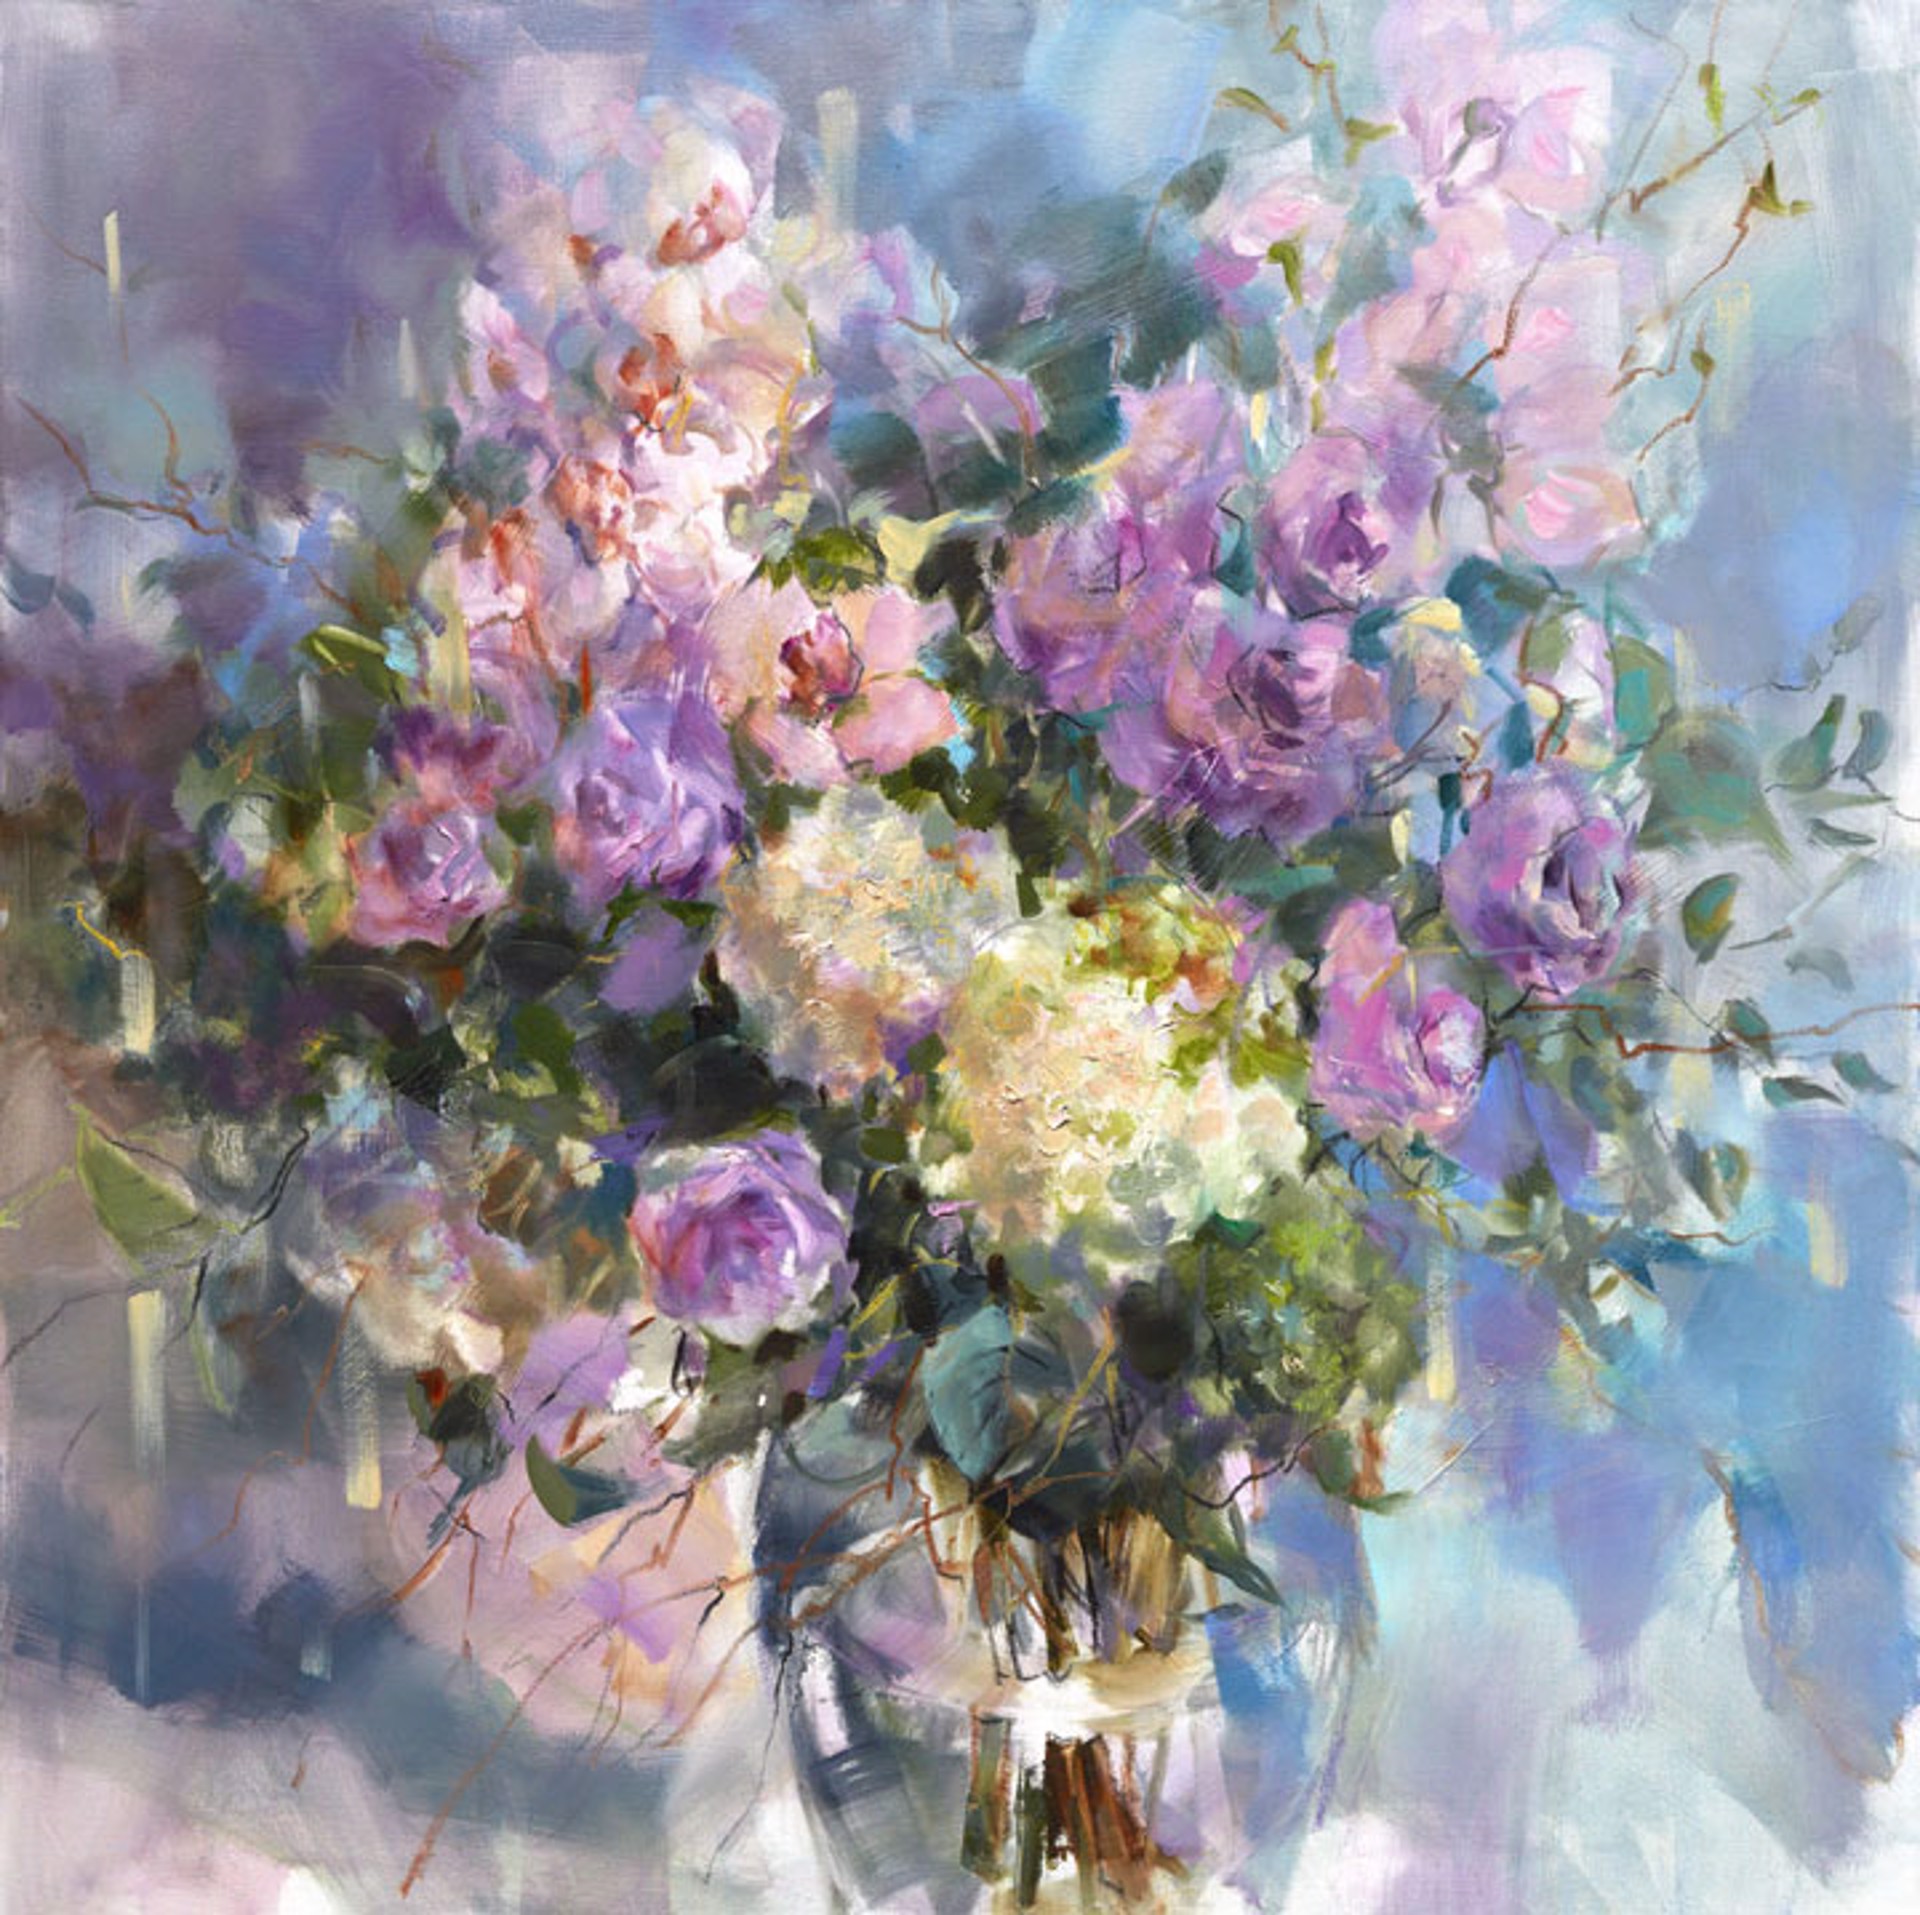 "Bouquet in a Vase" by Anna Razumovskaya